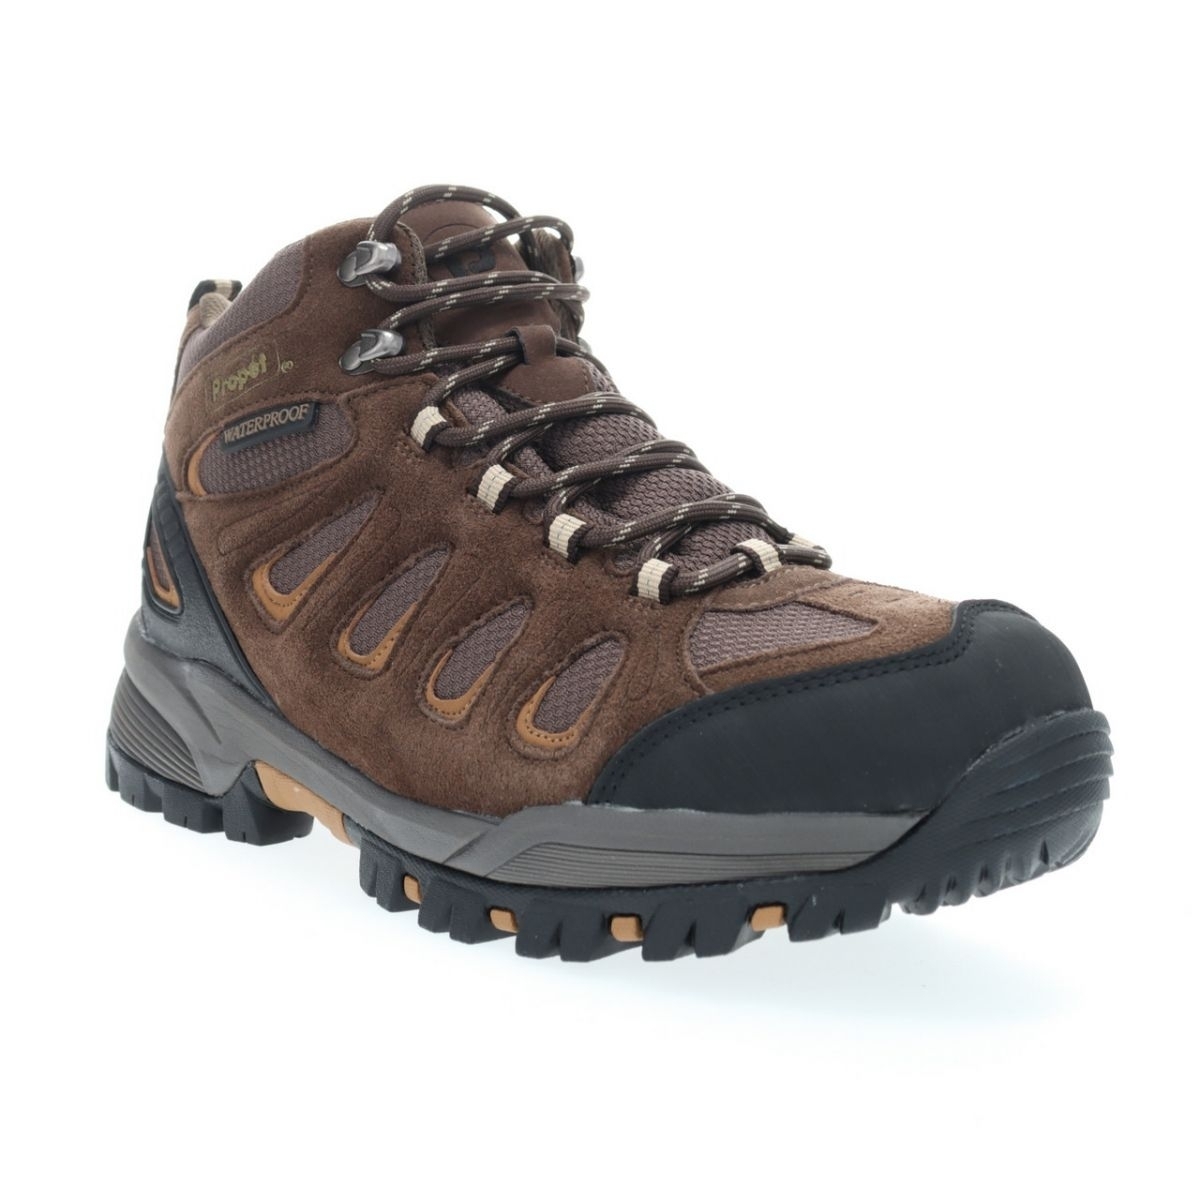 Propet Men's Ridge Walker Hiking Boot Brown - M3599BR 8 XX US Men BROWN - BROWN, 8 X-Wide